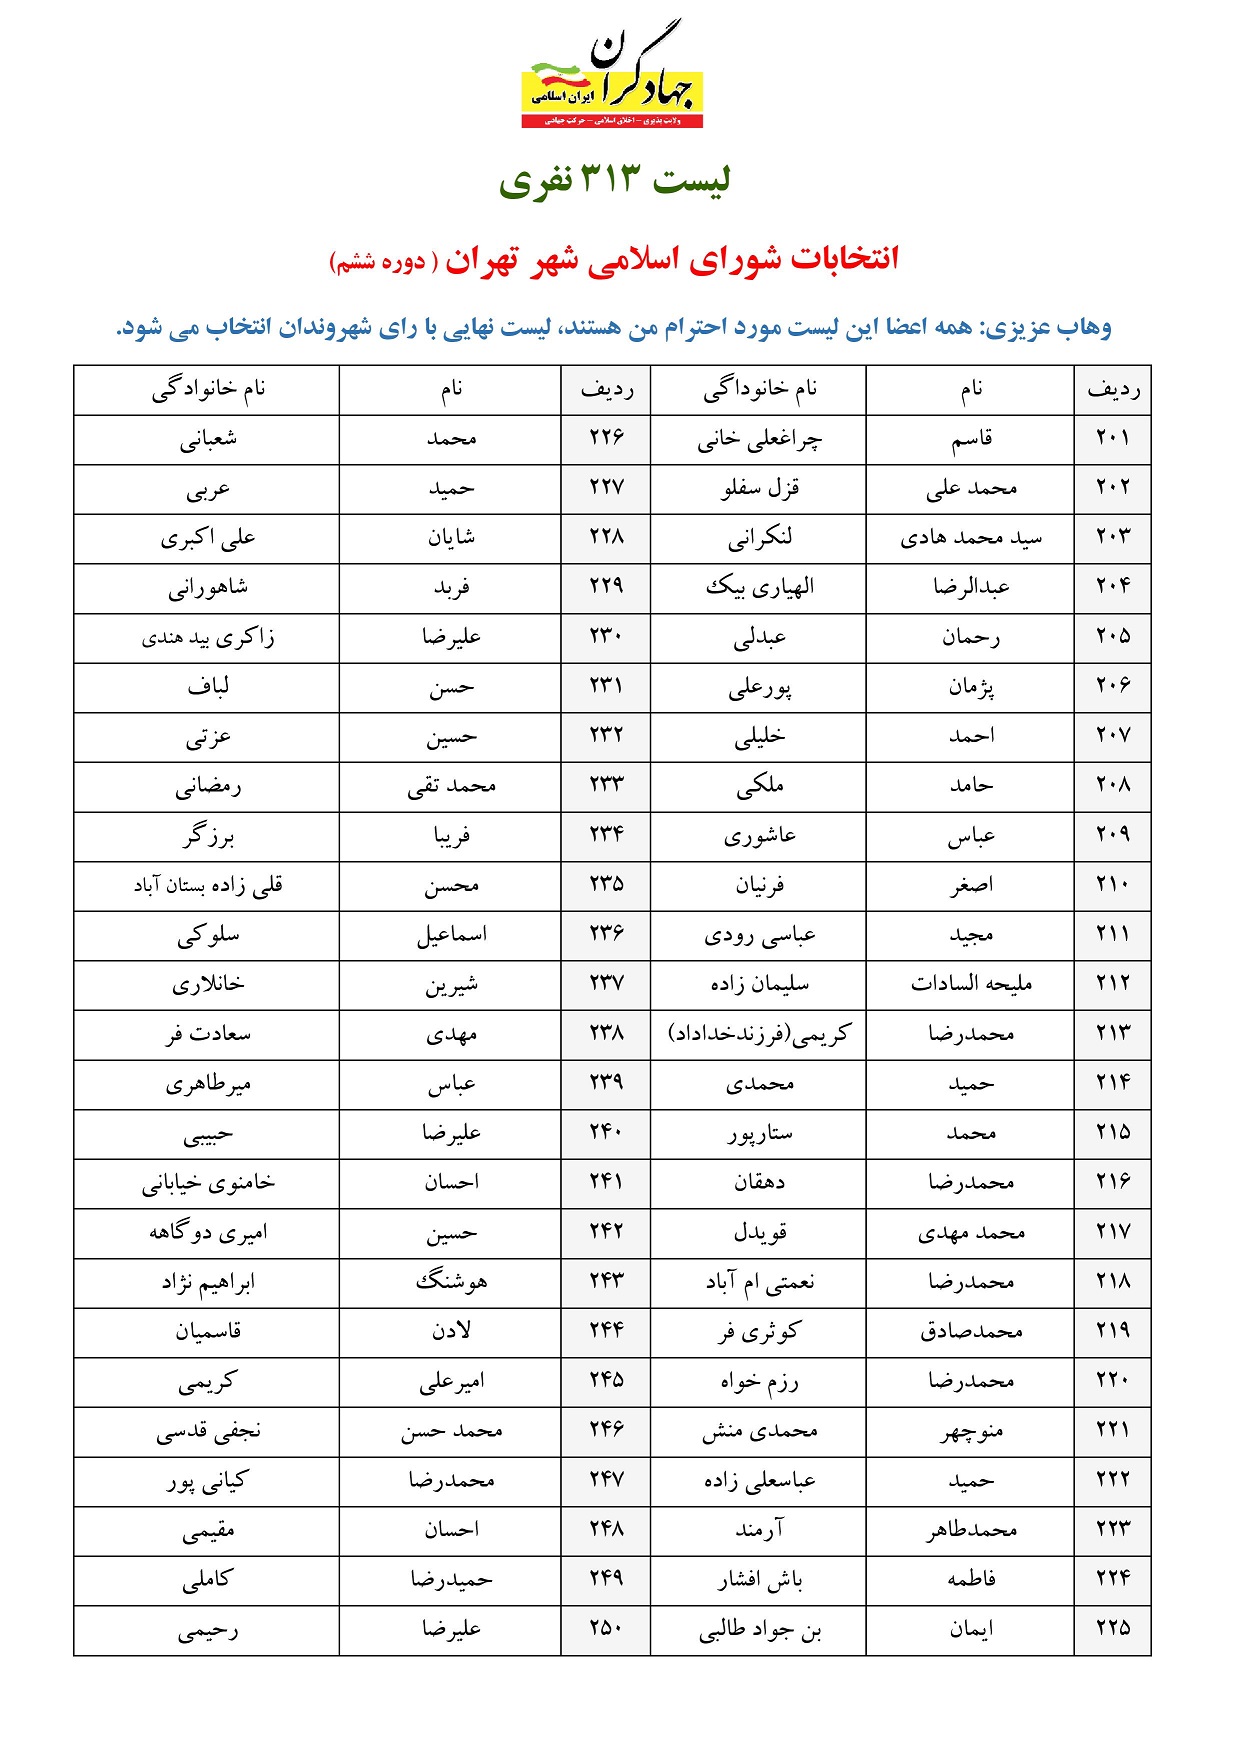 لیست شورای شهر جهادگران